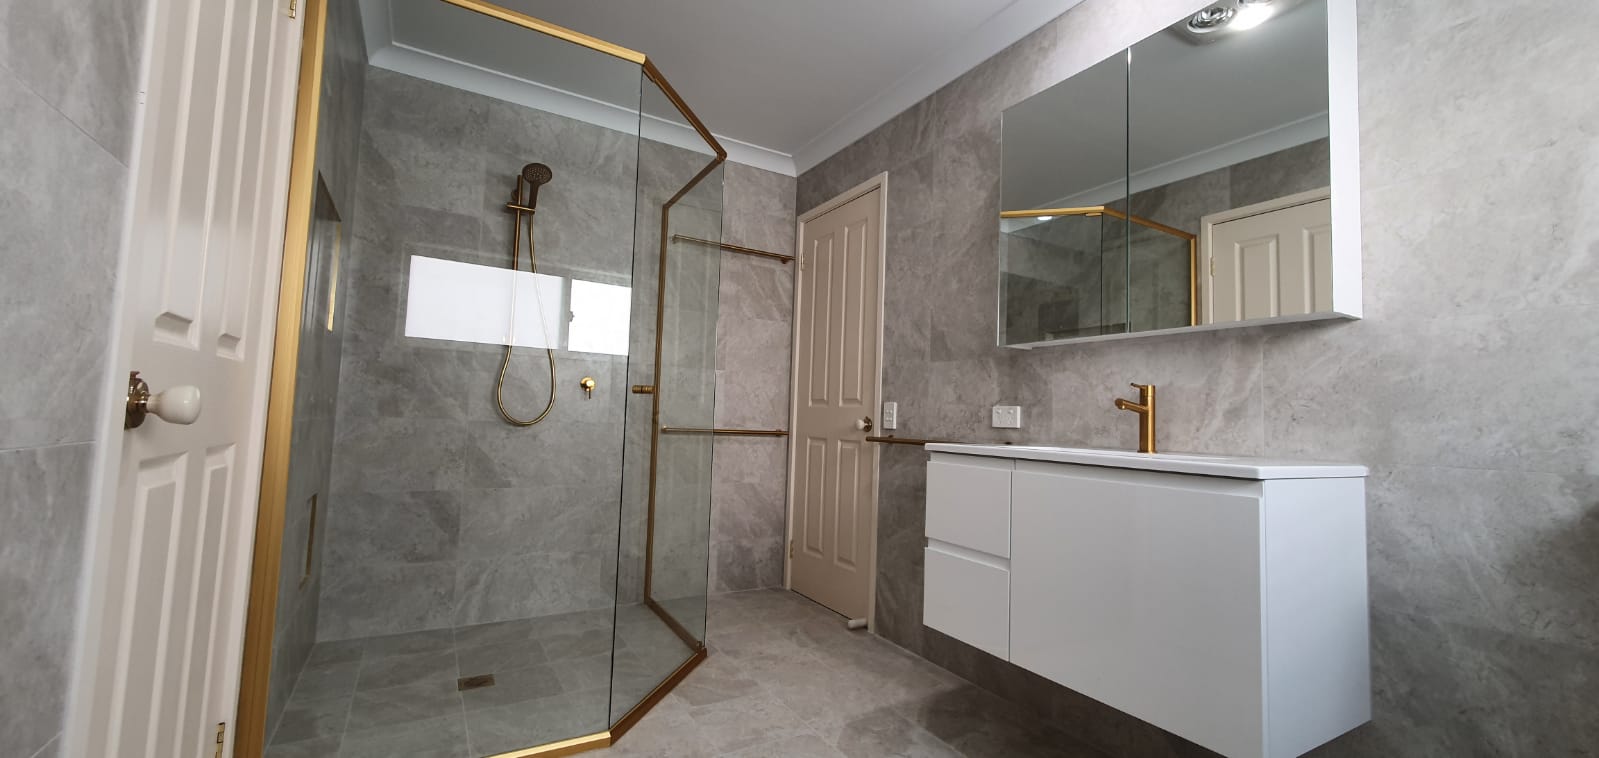 Fotos de Summit Bathrooms - The bathroom renovation specialists